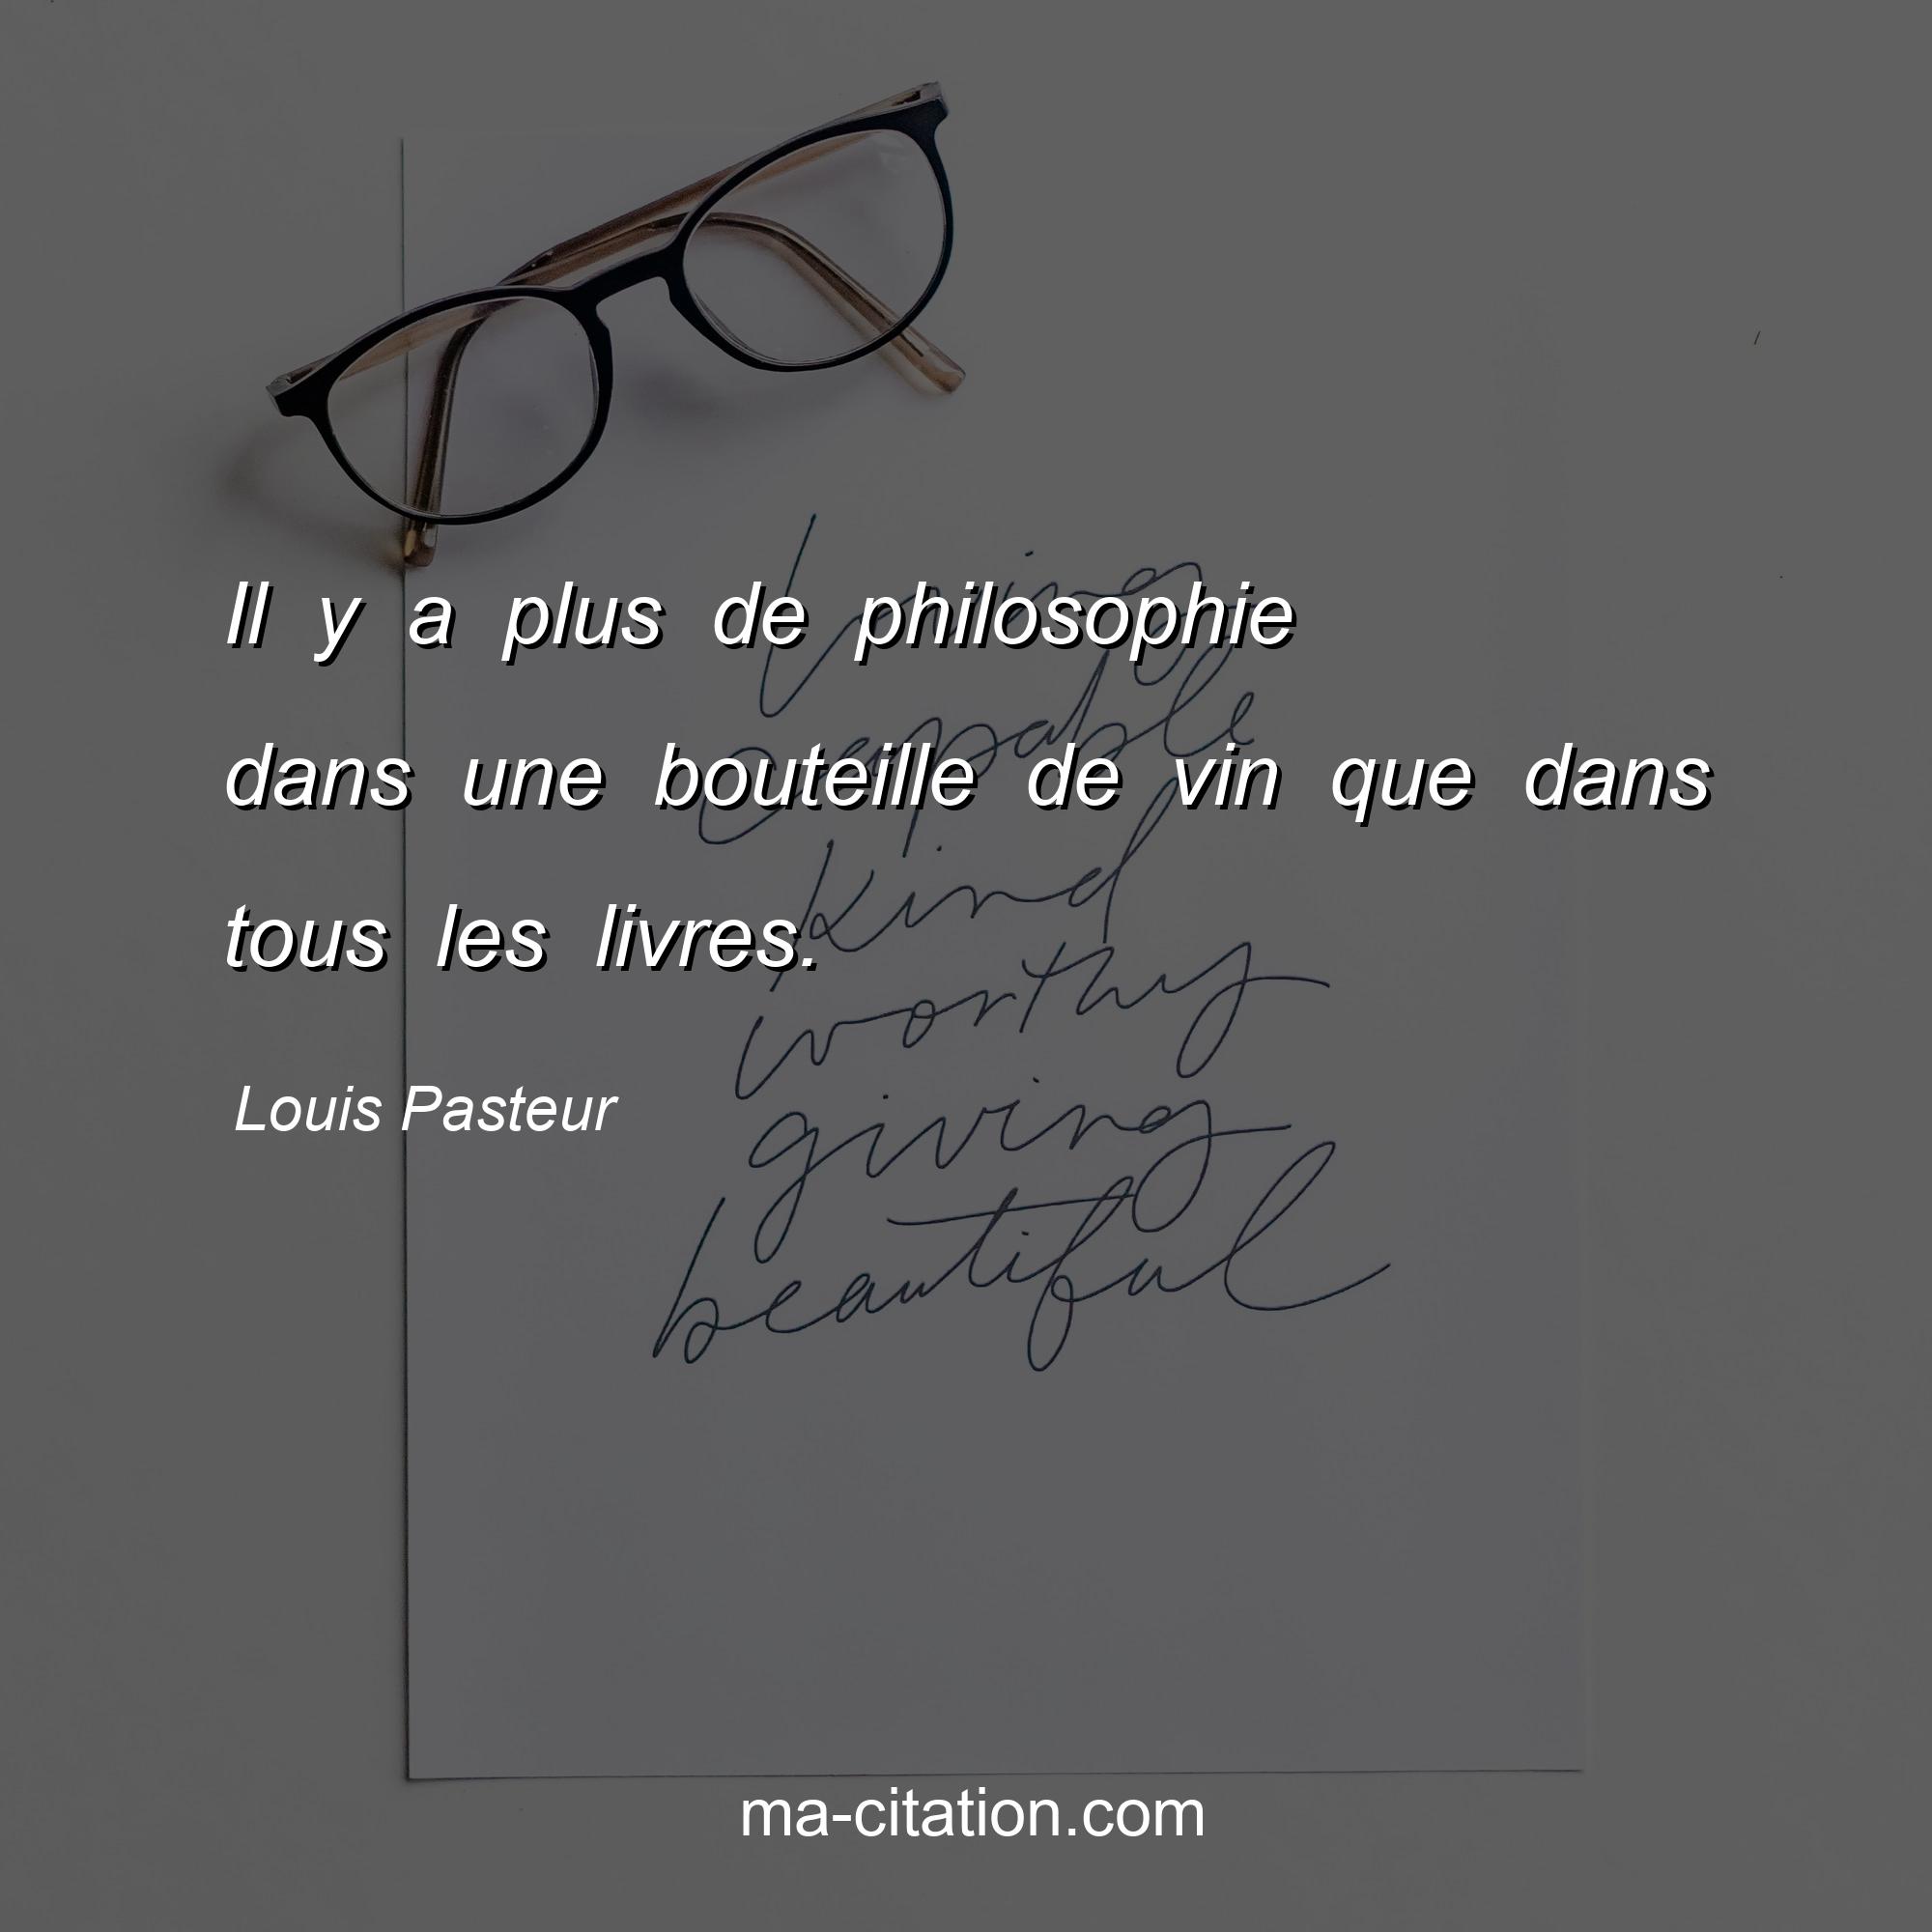 Louis Pasteur : Il y a plus de philosophie dans une bouteille de vin que dans tous les livres.